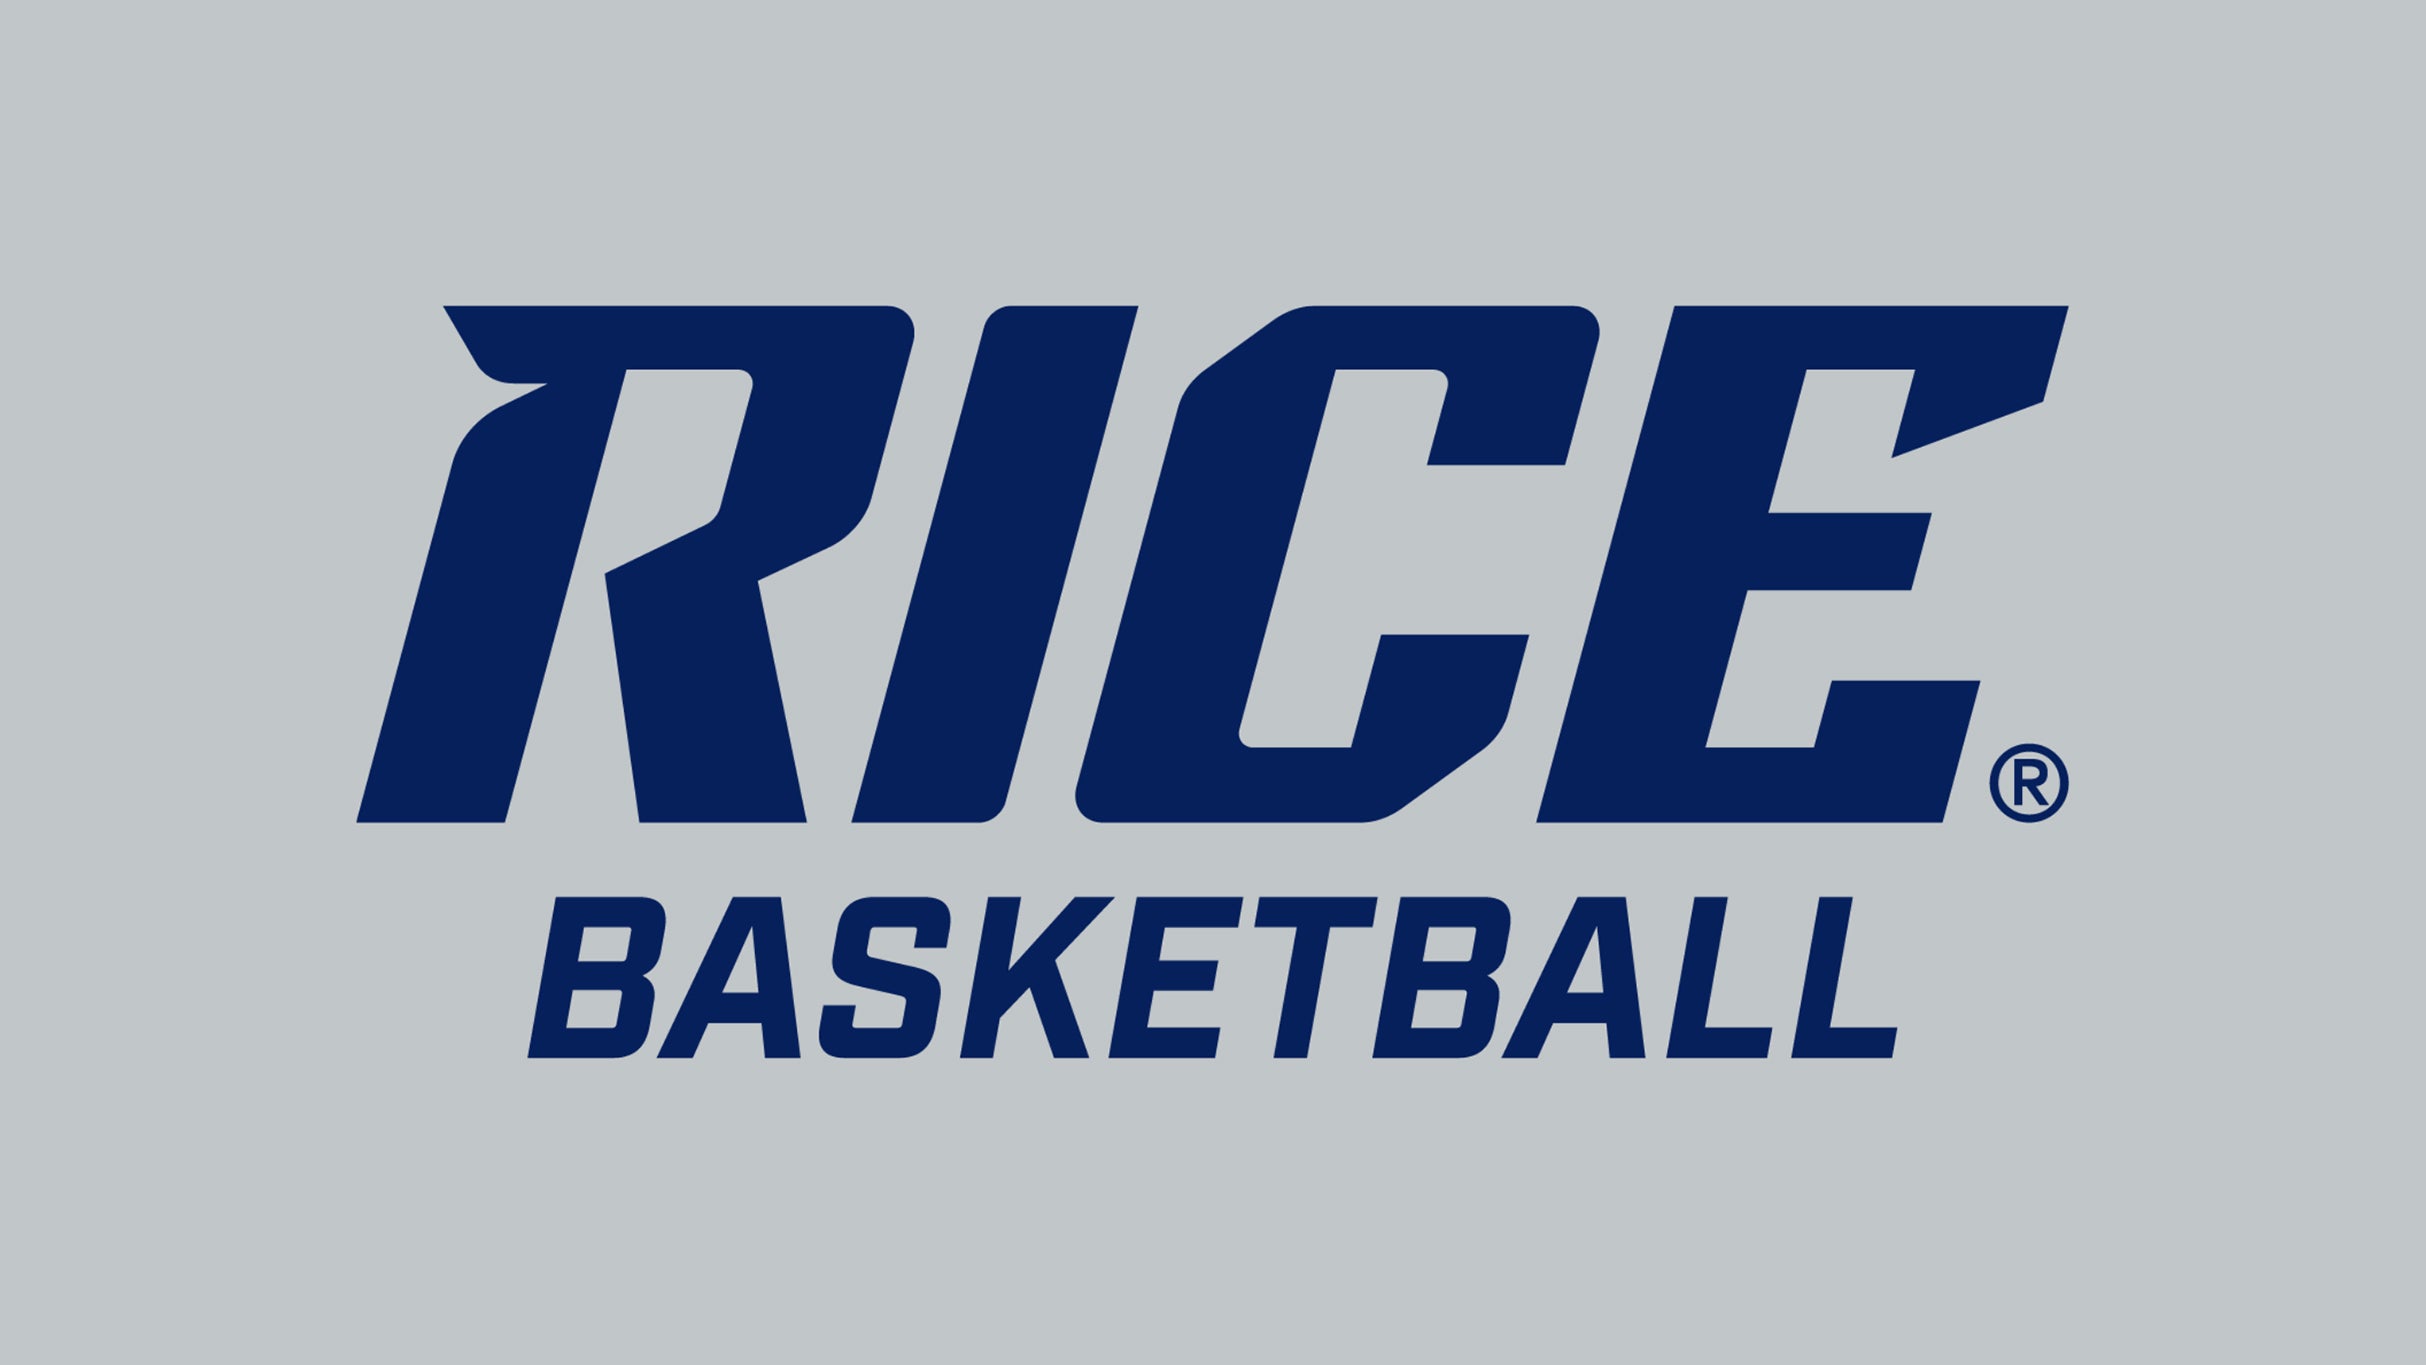 Rice Owls Men's Basketball vs. South Florida Bulls Men's Basketball in Houston promo photo for Resale Onsale presale offer code